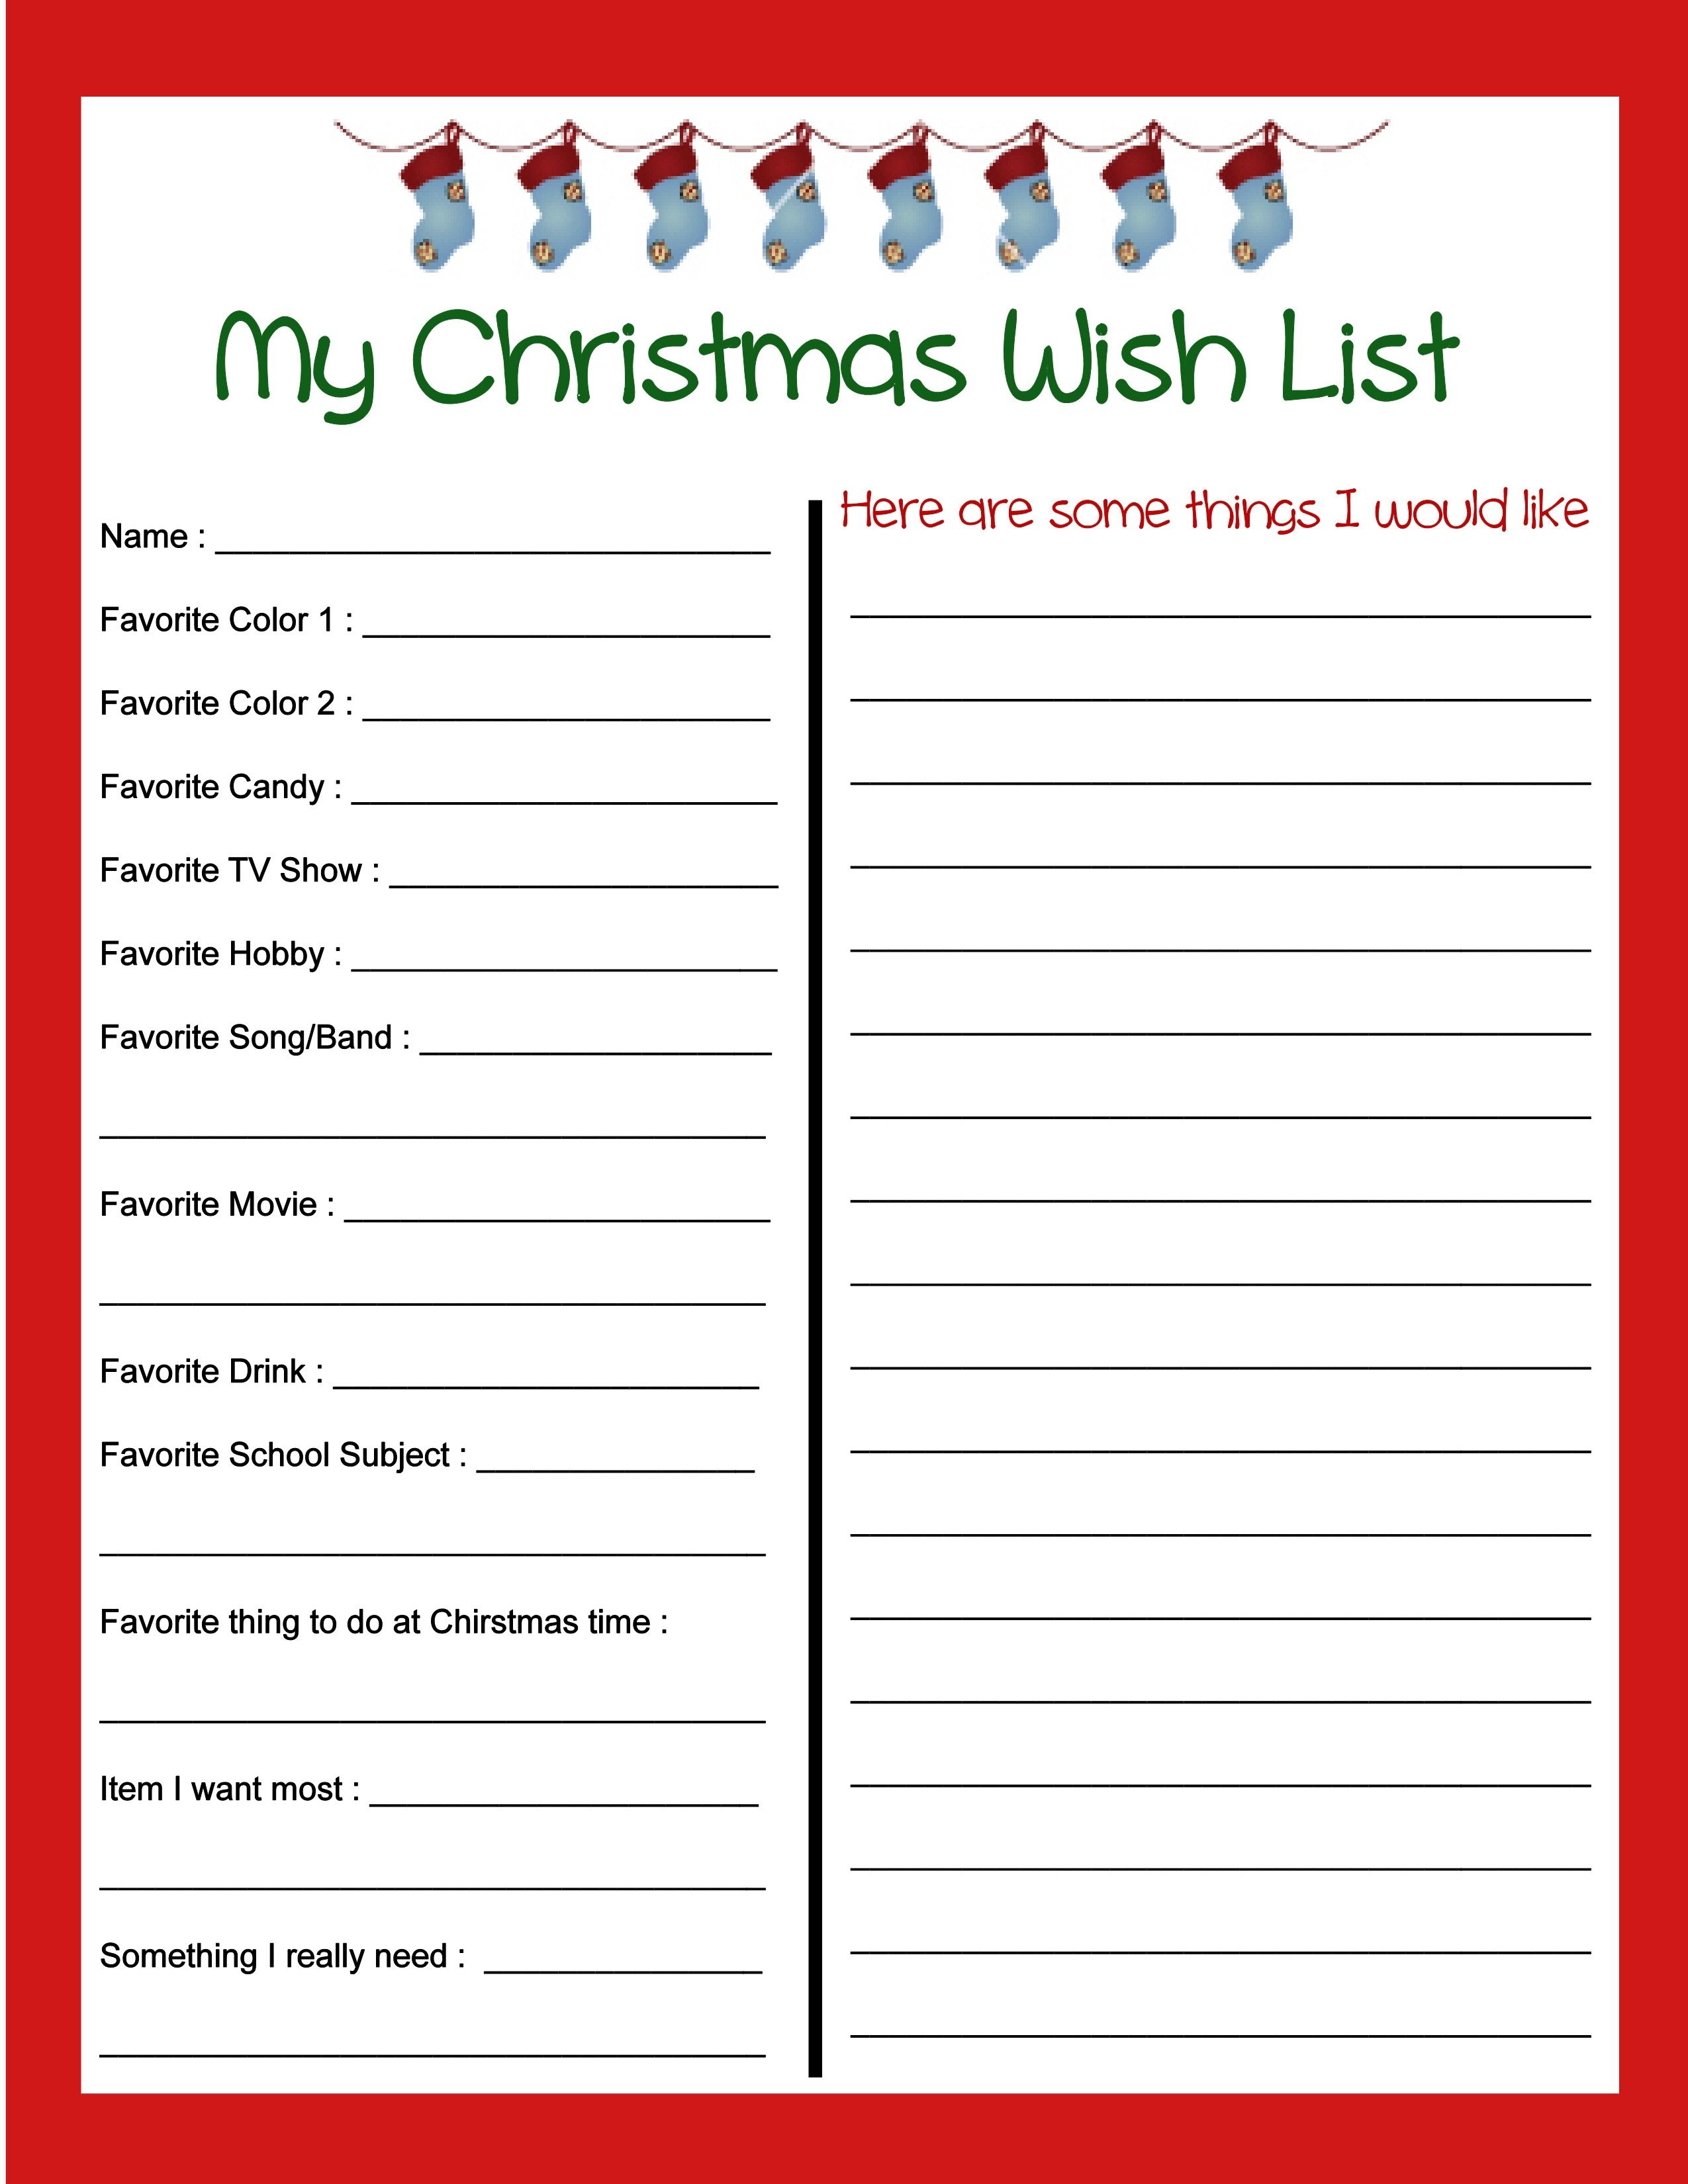 Pinbecky Stout On Christmas Christmas Wish List Template Free Printable Christmas List